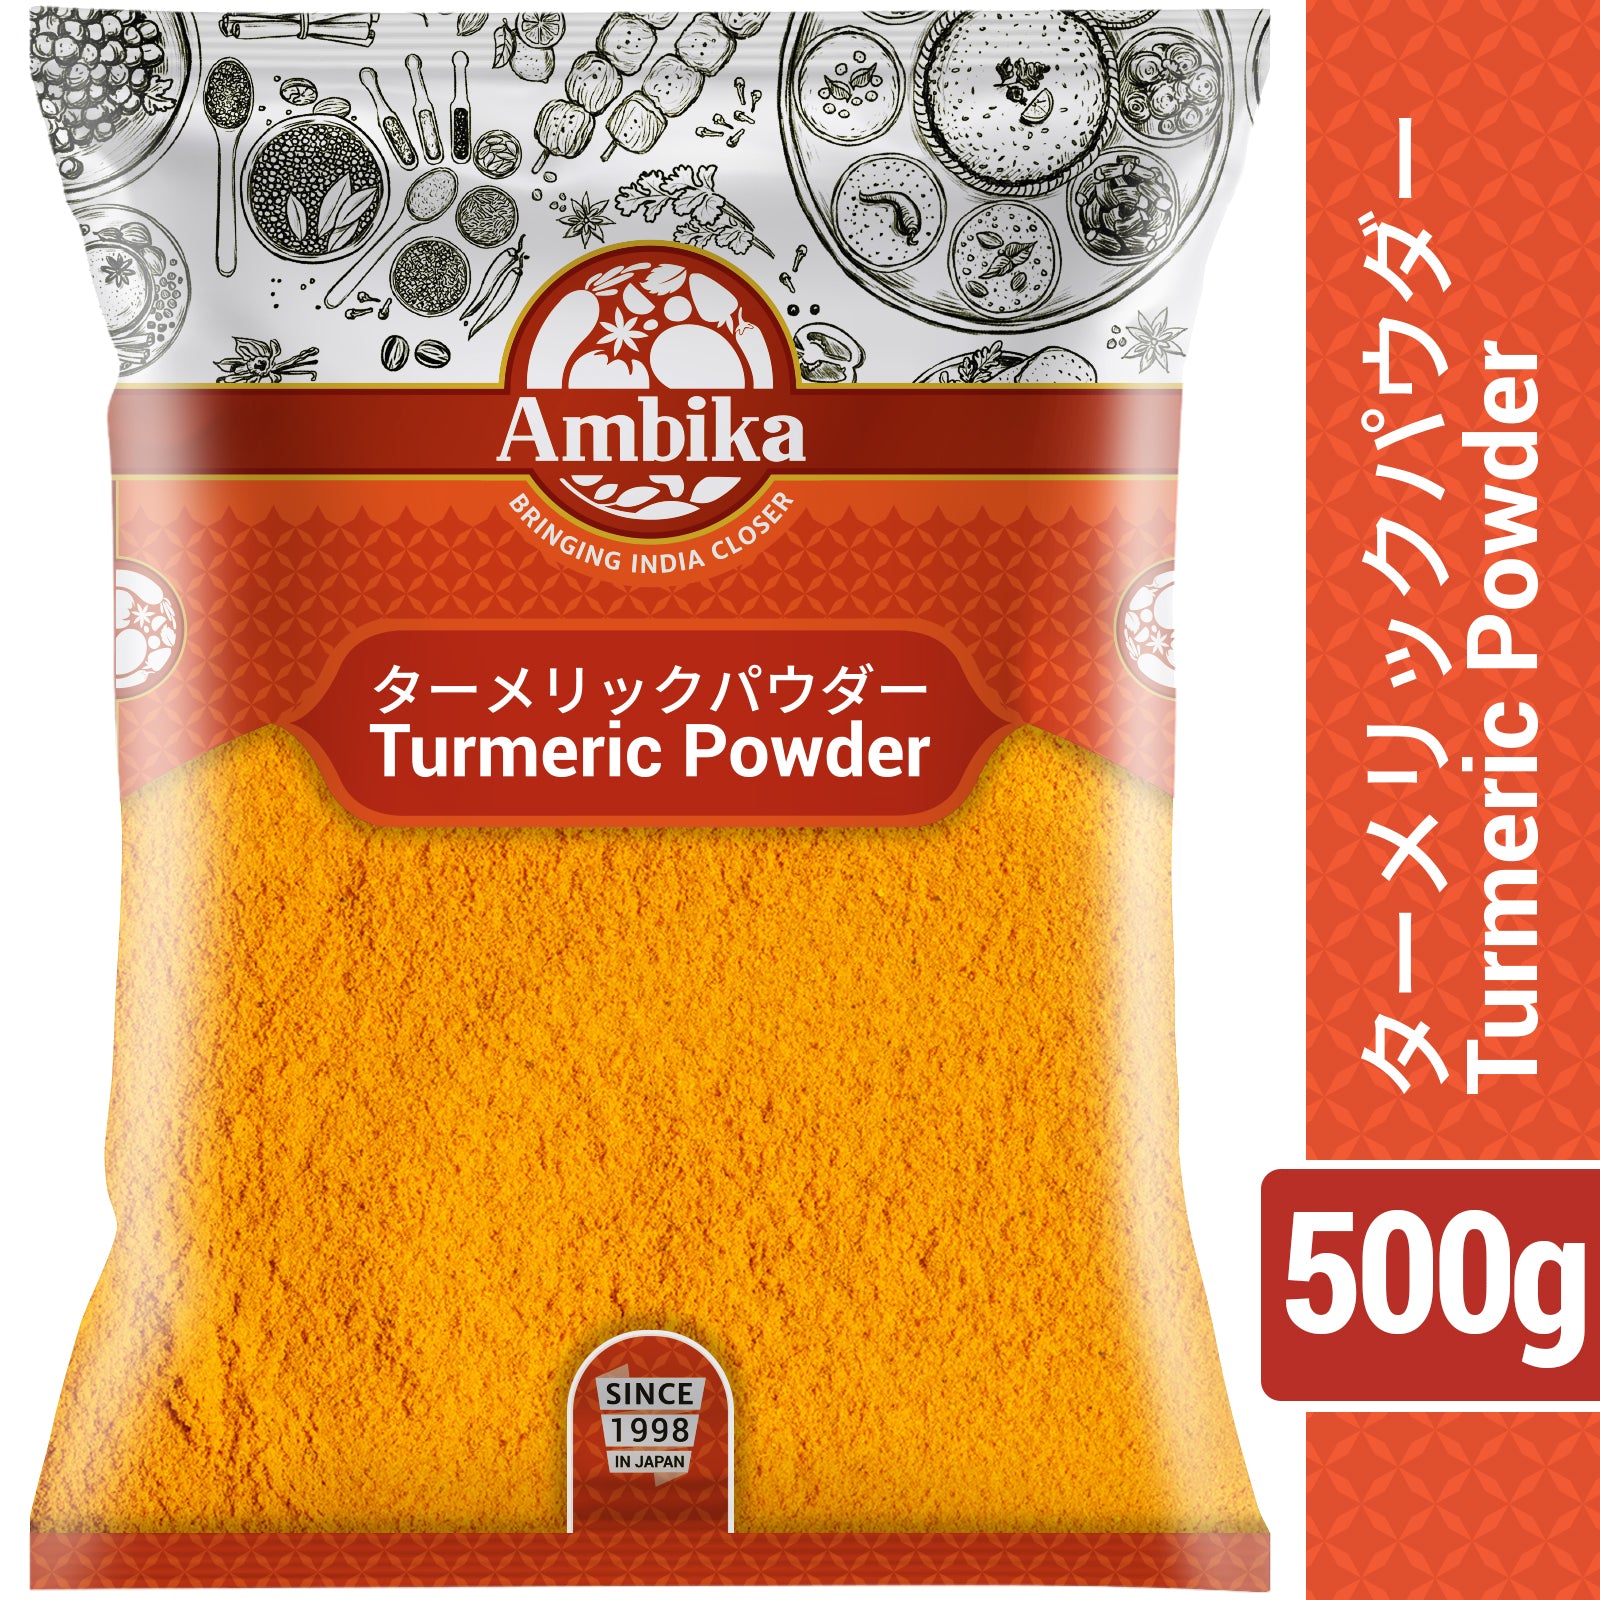 Ambika Turmeric Powder 500g